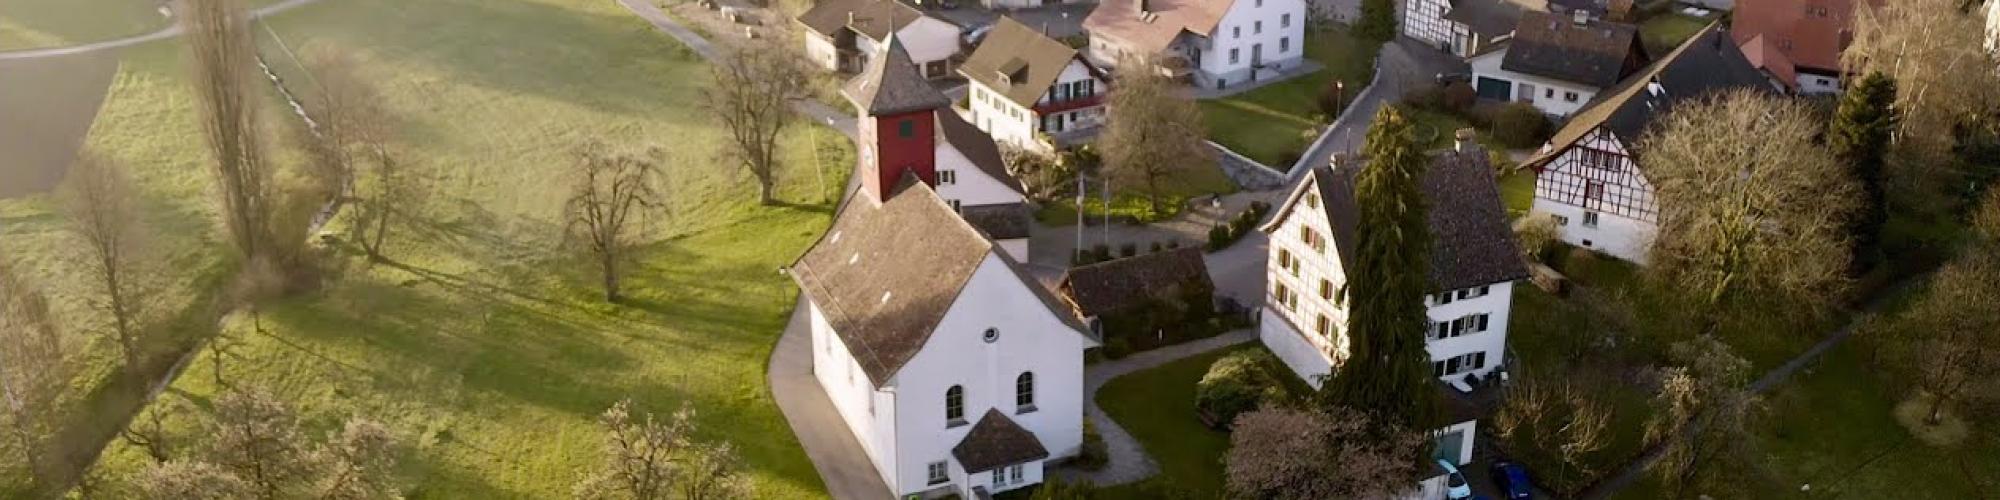  Evangelisch-reformierte Kirchgemeinde Stadlerberg